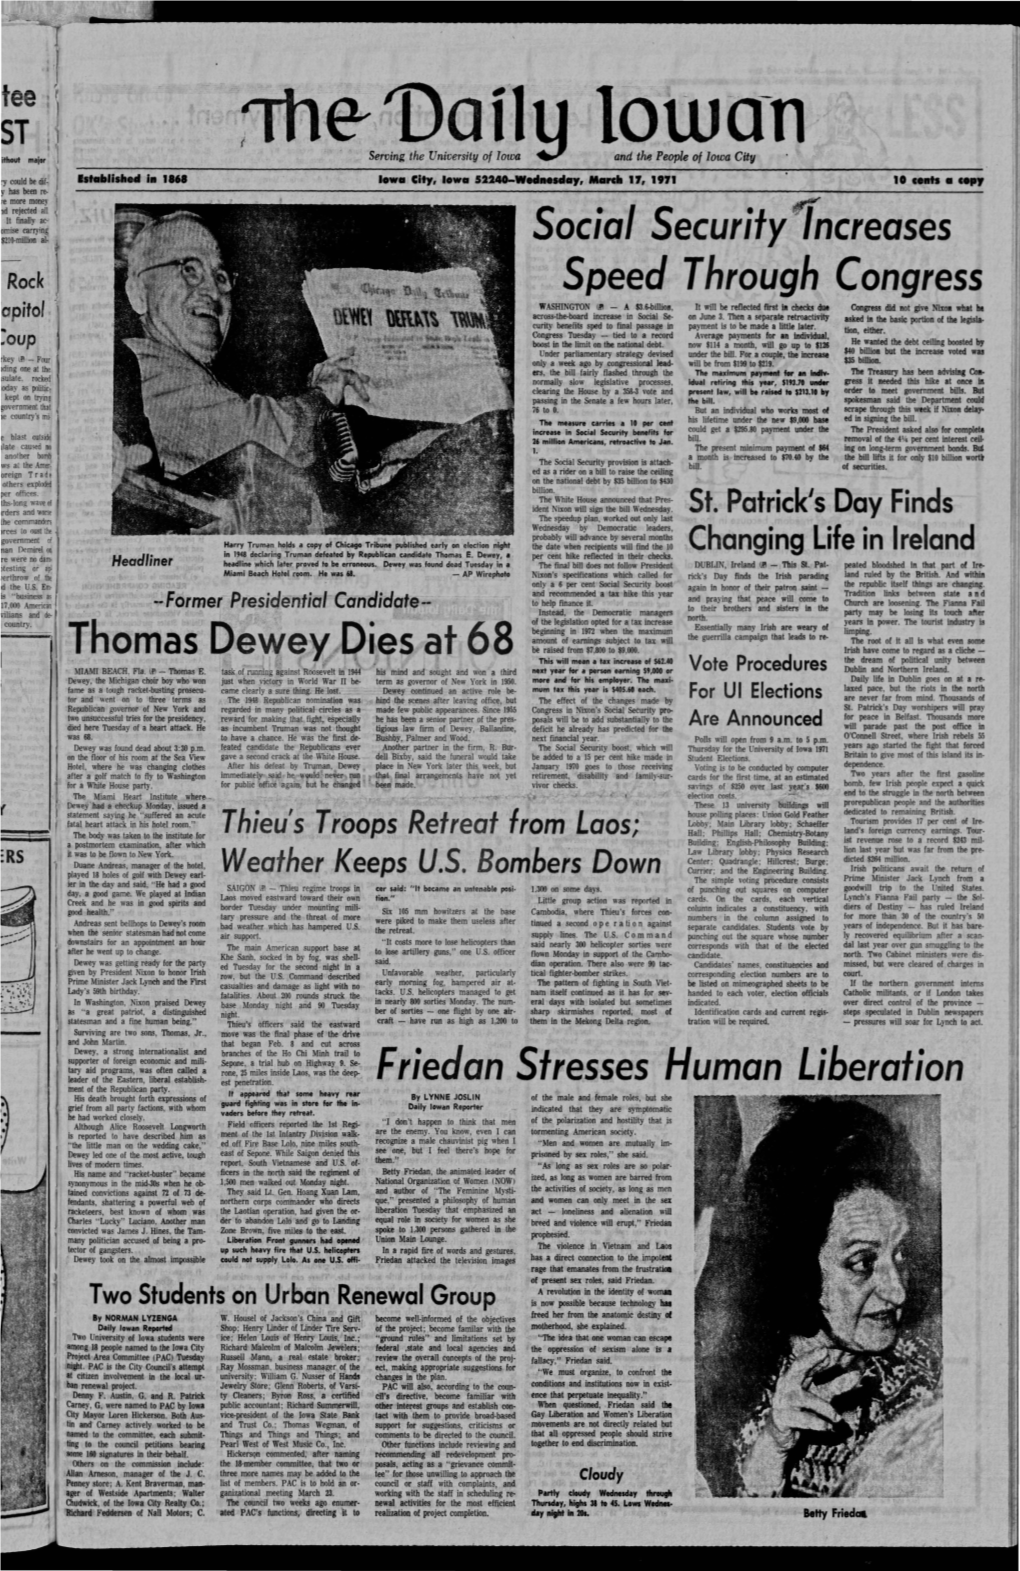 Daily Iowan (Iowa City, Iowa), 1971-03-17